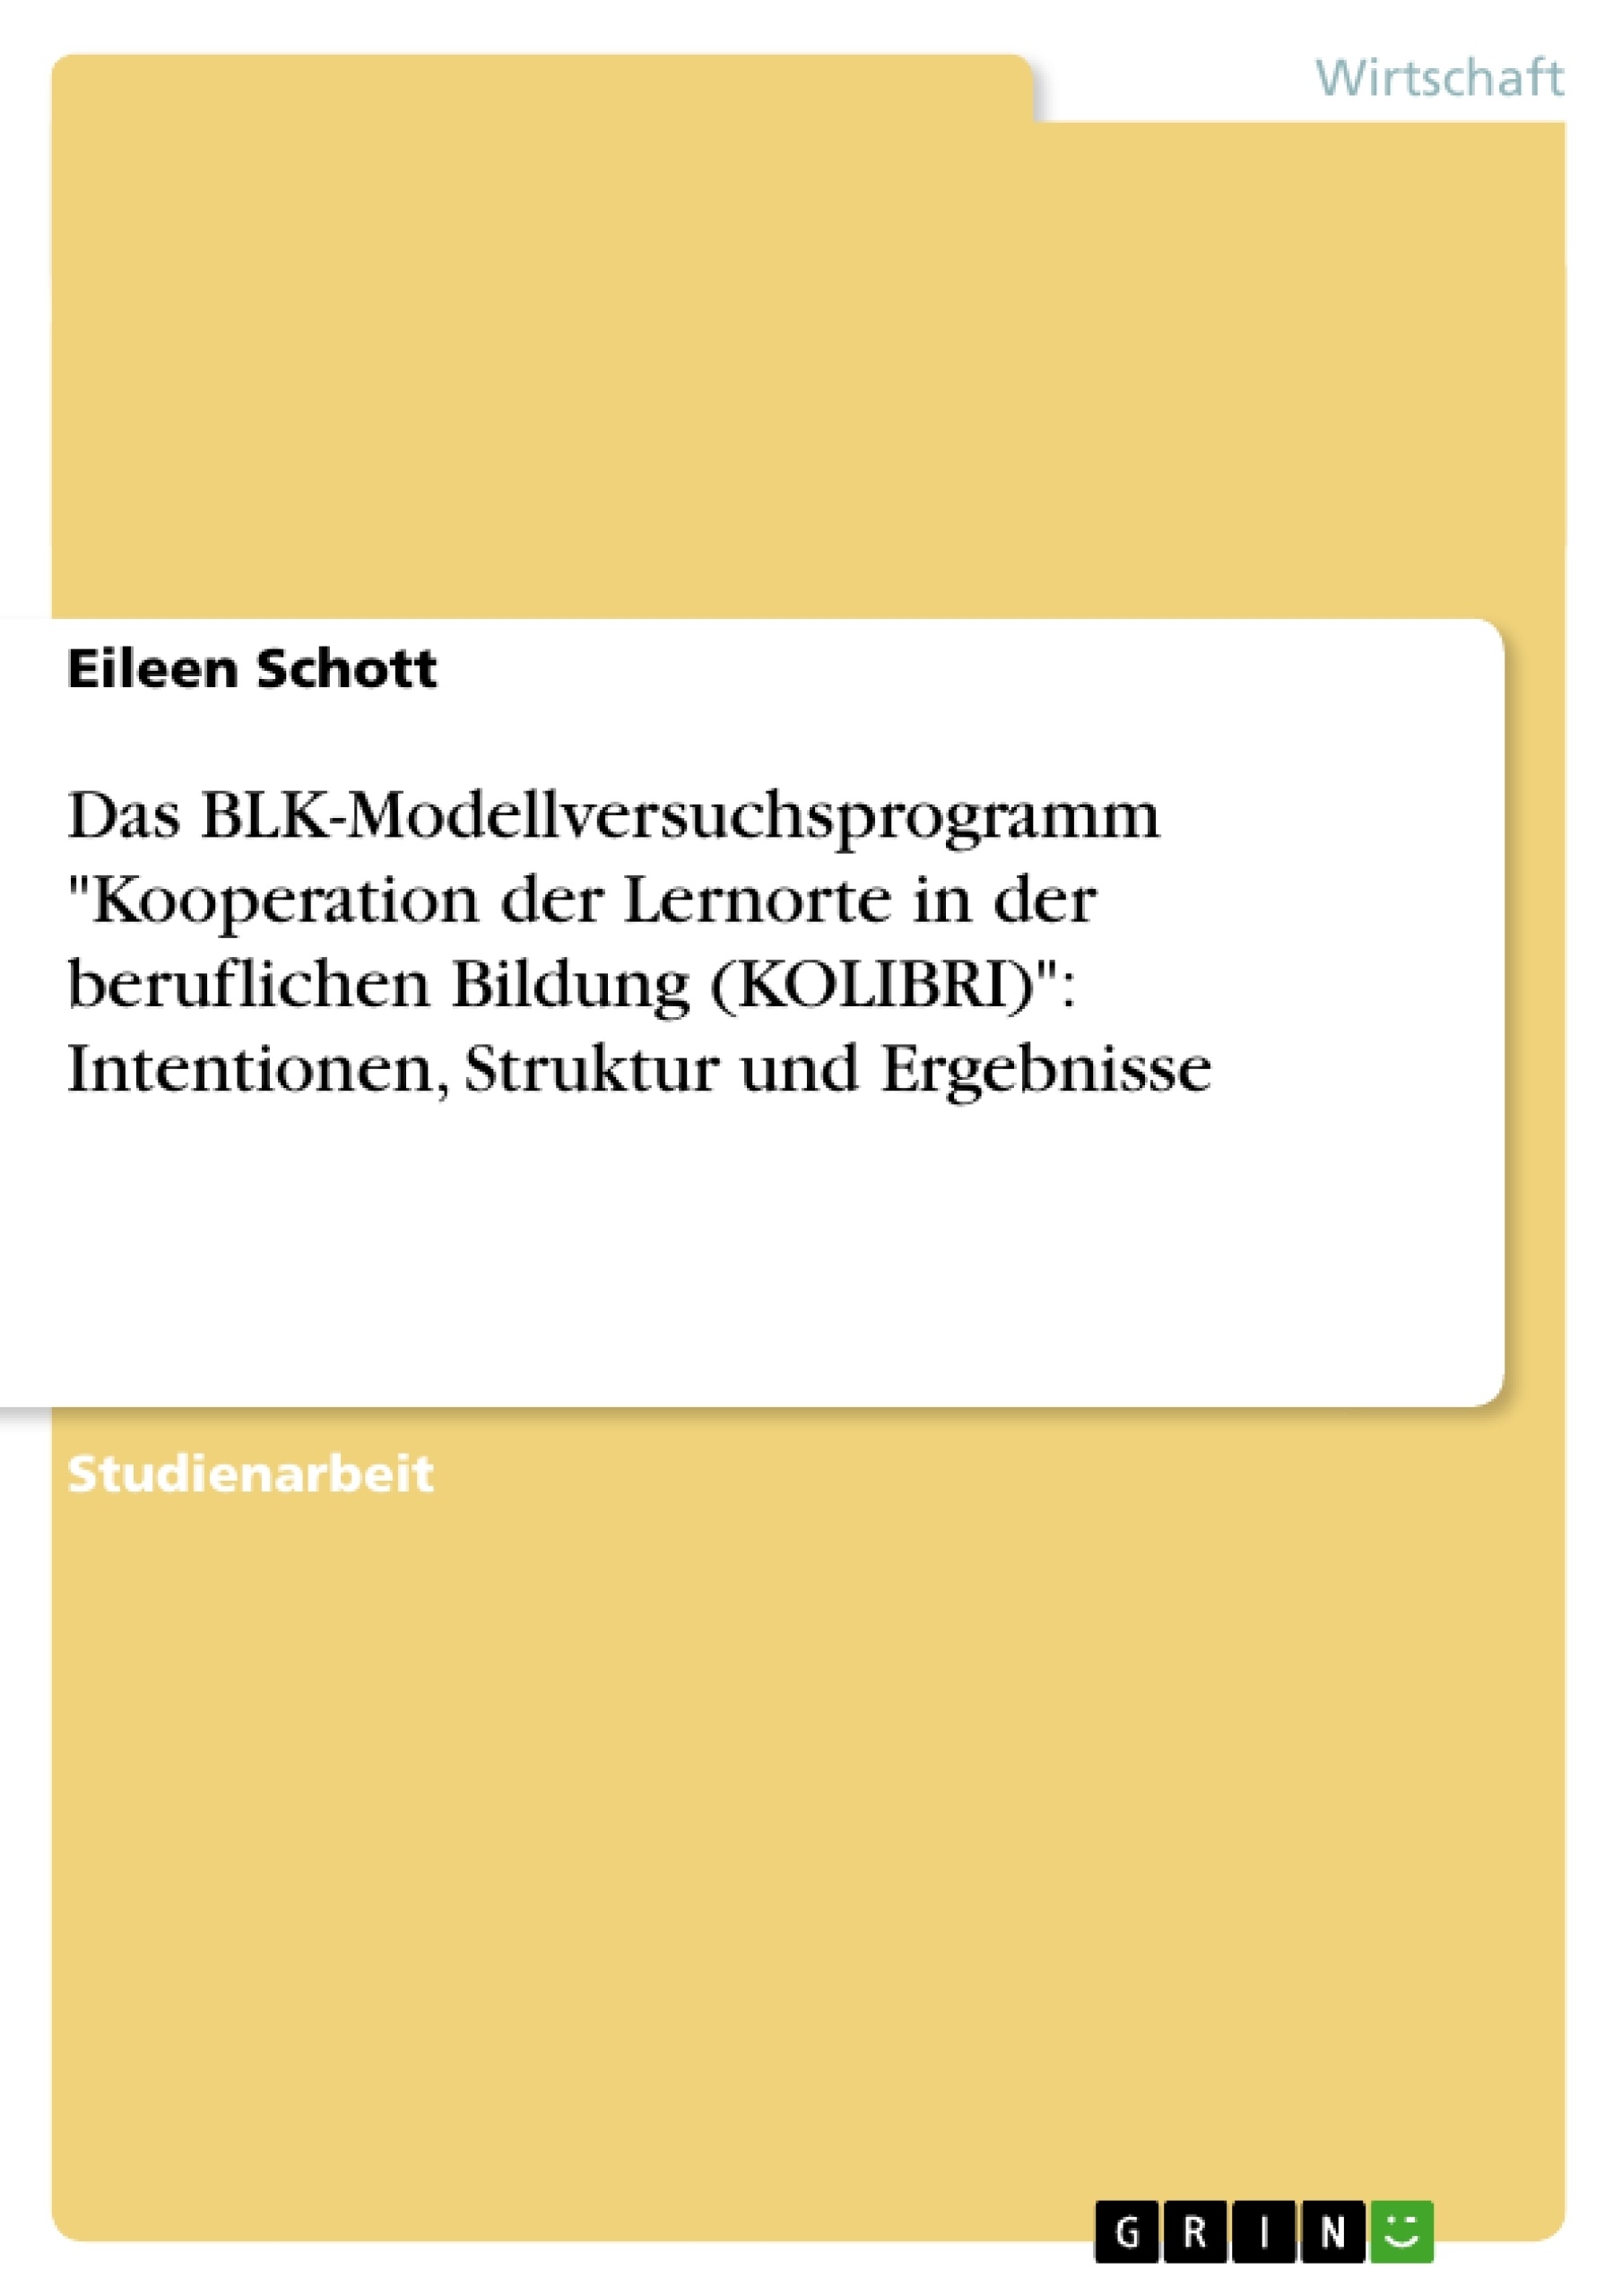 Titre: Das BLK-Modellversuchsprogramm "Kooperation der Lernorte in der beruflichen Bildung (KOLIBRI)": Intentionen, Struktur und Ergebnisse